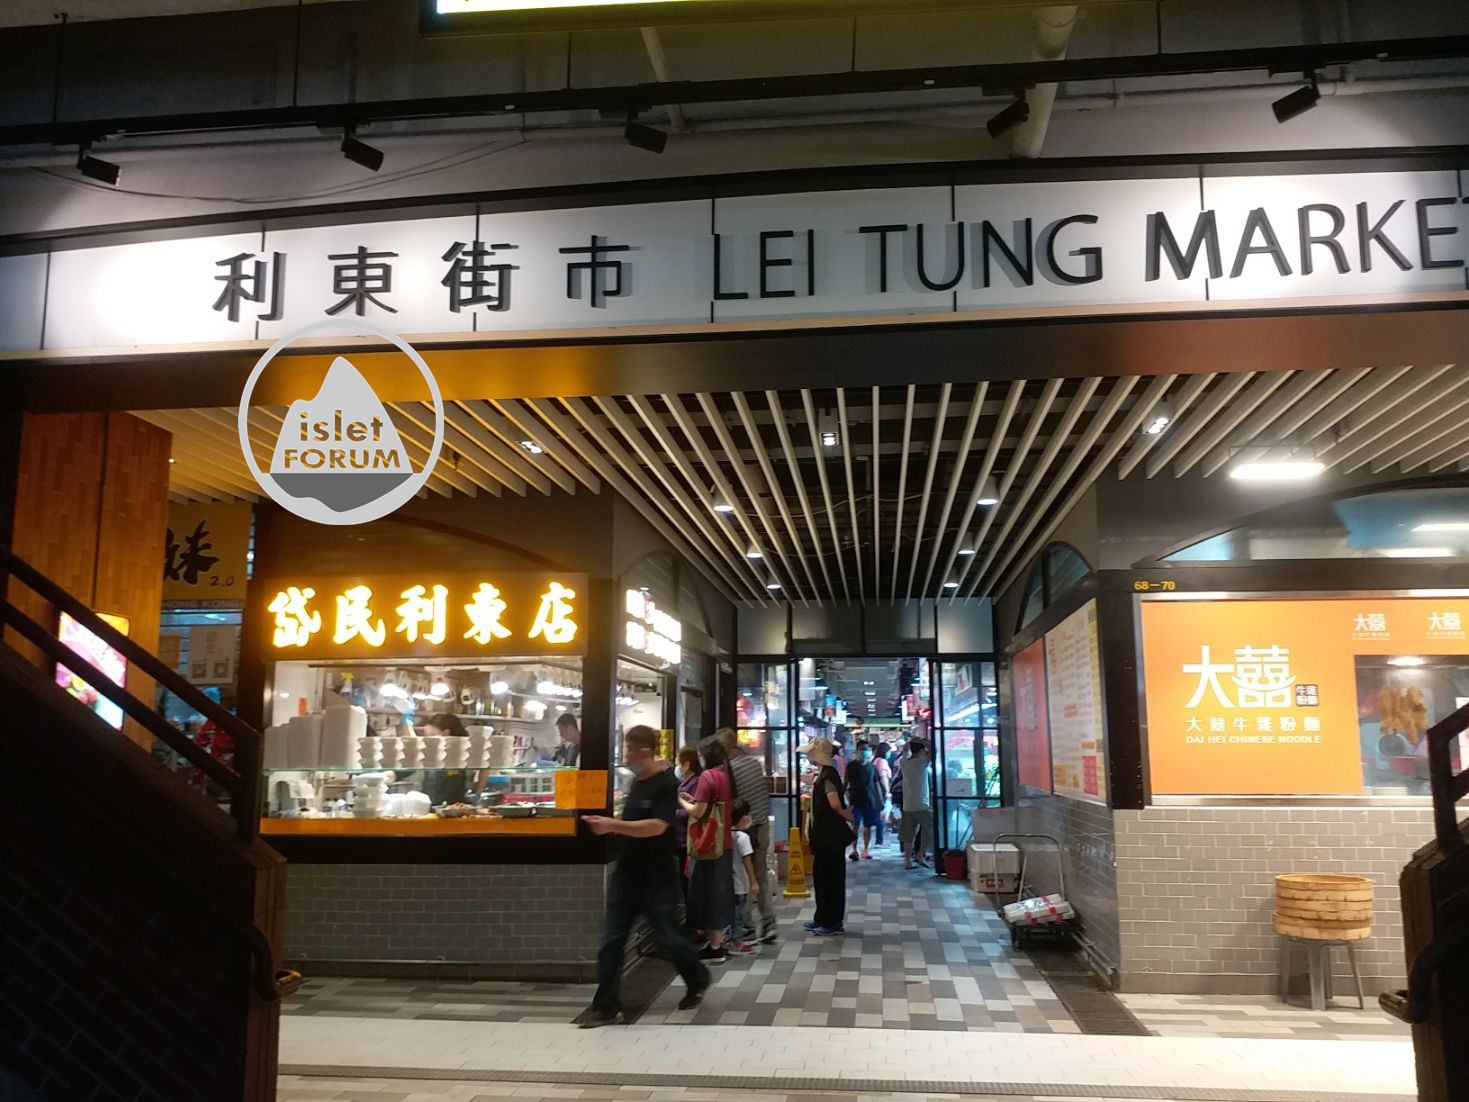 利東街市lei tung market (1).jpg